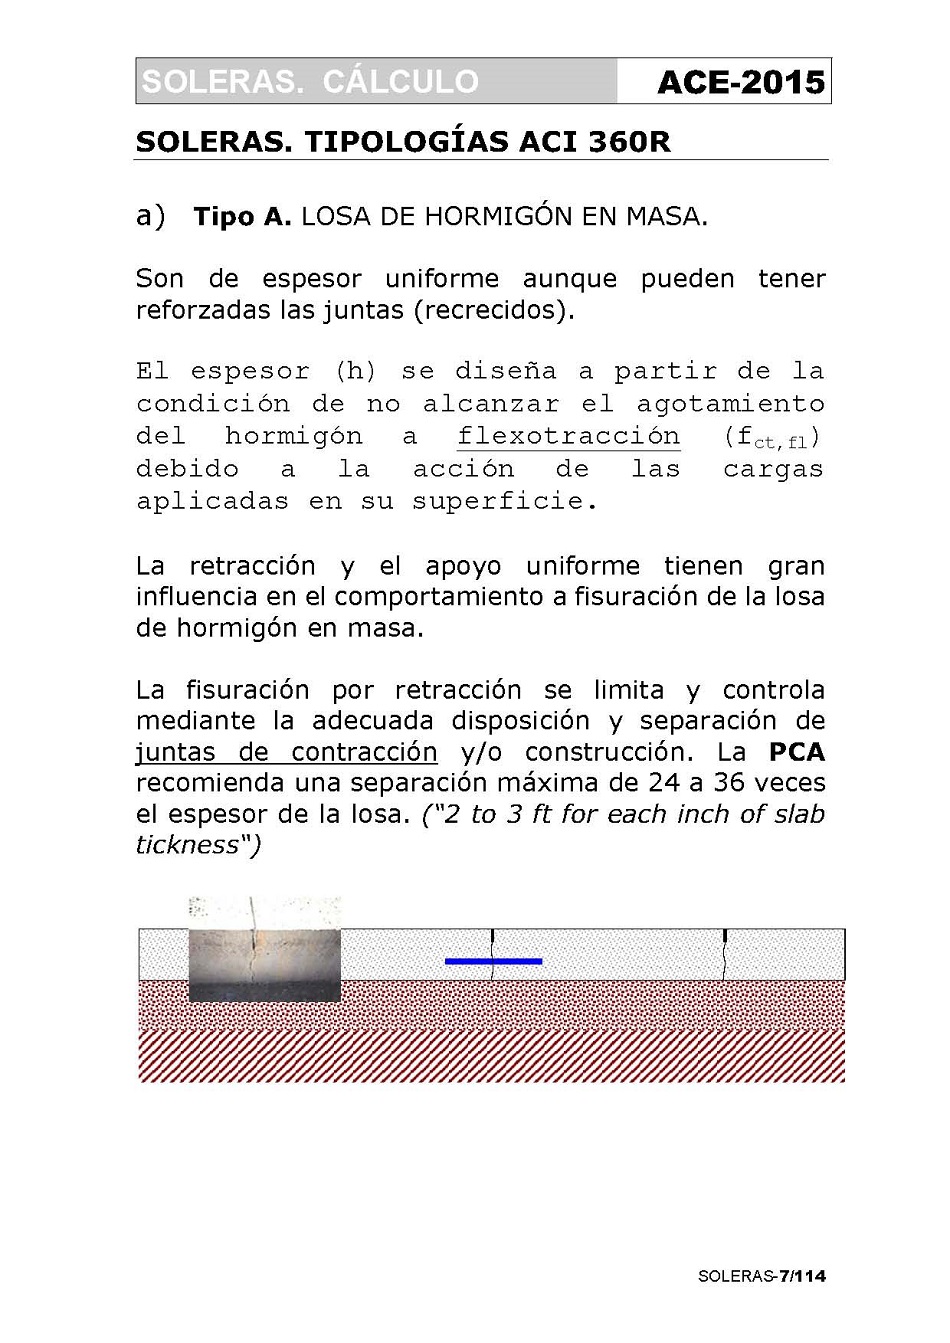 Cálculo de Soleras de Hormigón. Página 07